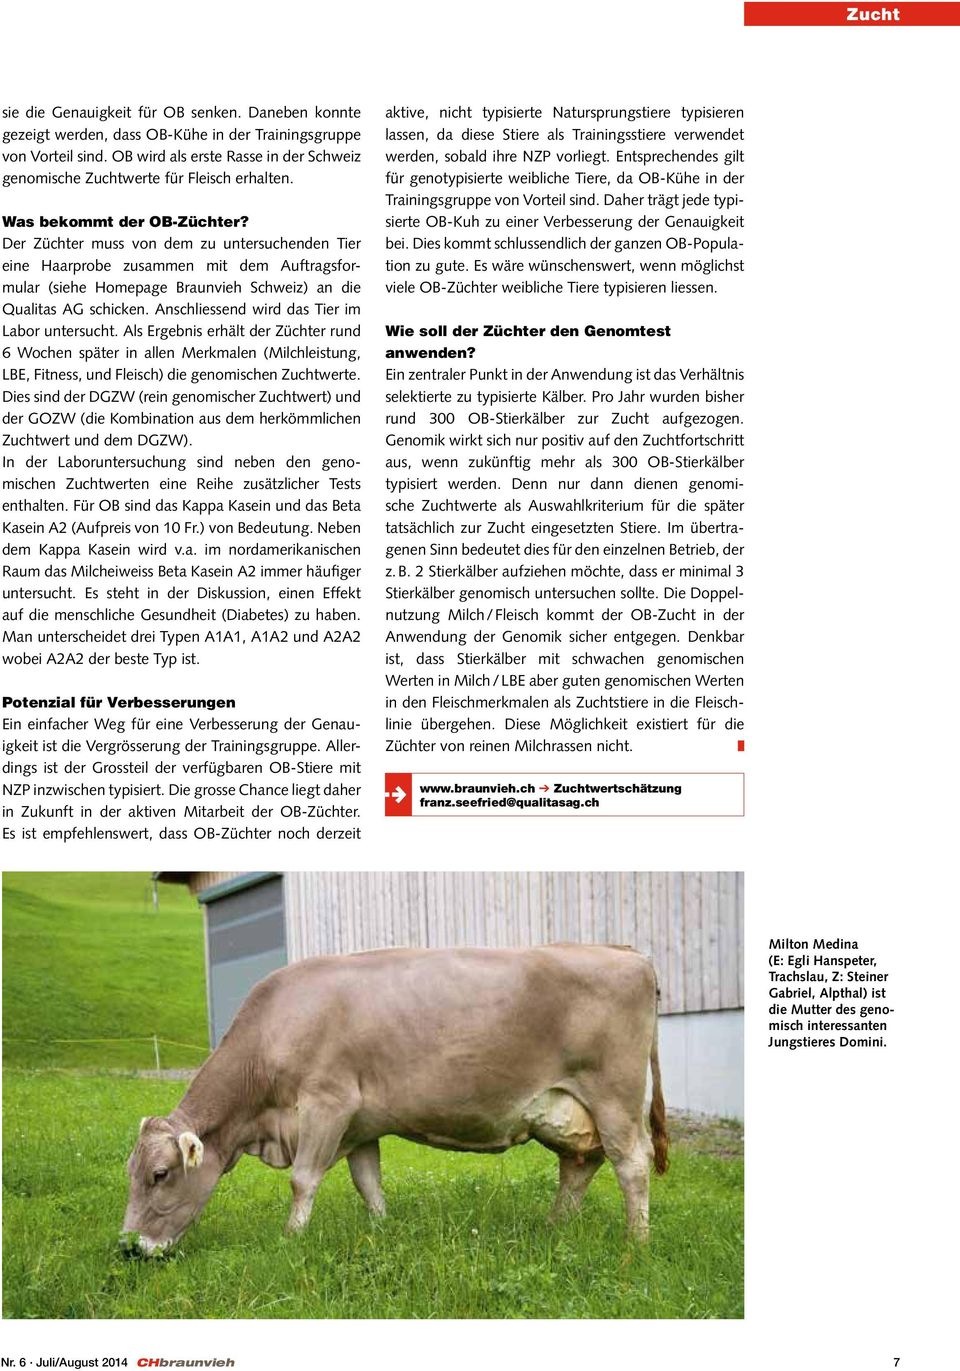 Der Züchter muss von dem zu untersuchenden Tier eine Haarprobe zusammen mit dem Auftragsformular (siehe Homepage Braunvieh Schweiz) an die Qualitas AG schicken.